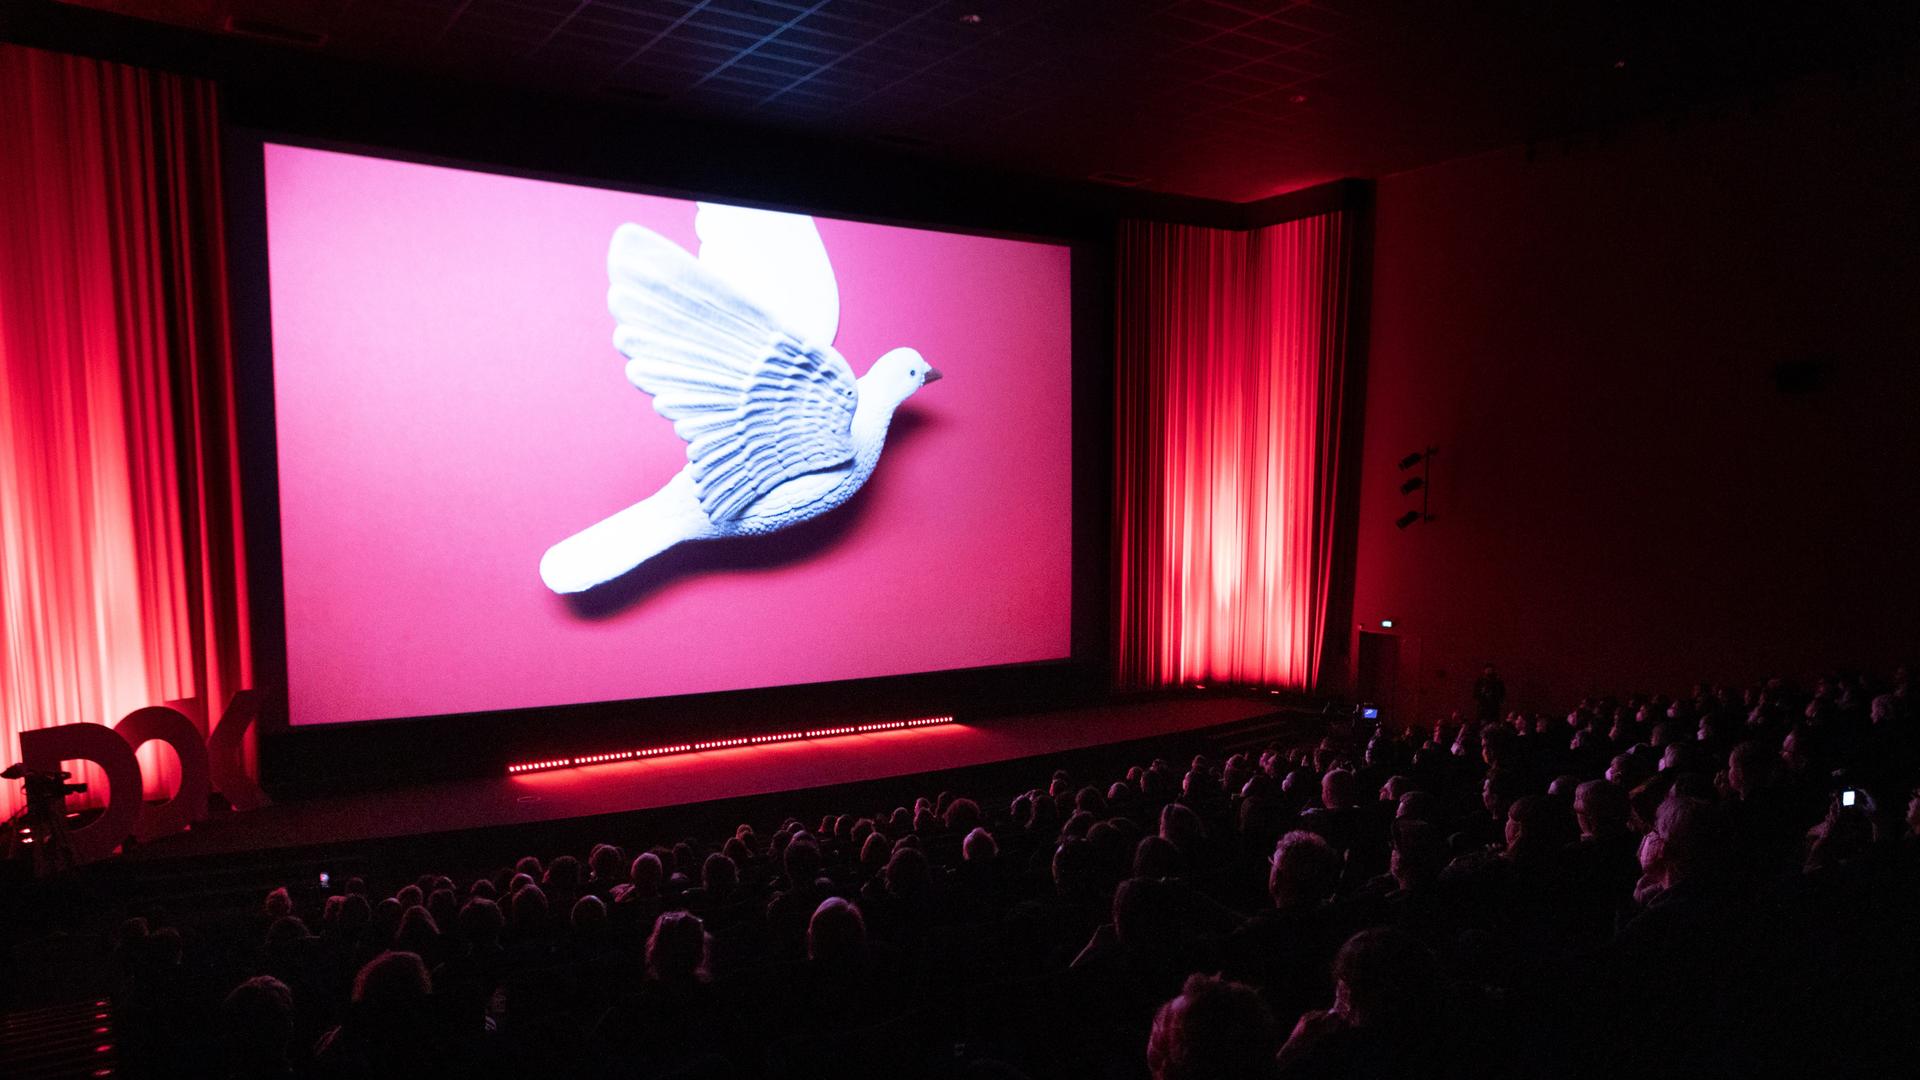 Eröffnungszeremonie des Filmfestivals DOK Leipzig. Zu sehen ist ein voller Kinosaal mit einer großen Taube auf der Leinwand.